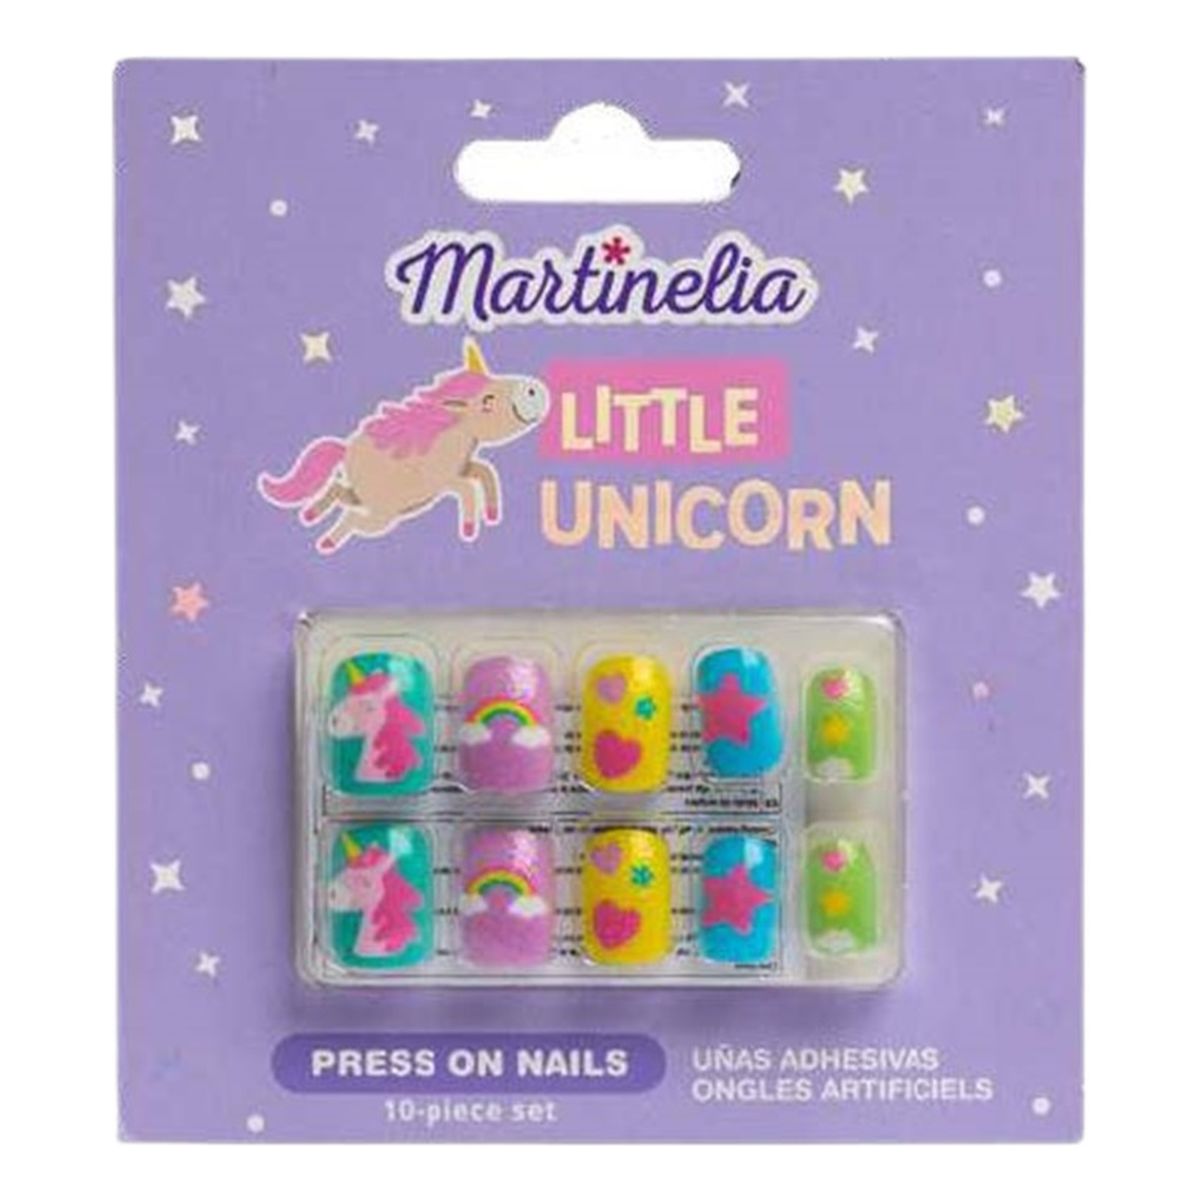 Martinelia Little unicorn press on nails sztuczne paznokcie 10szt.